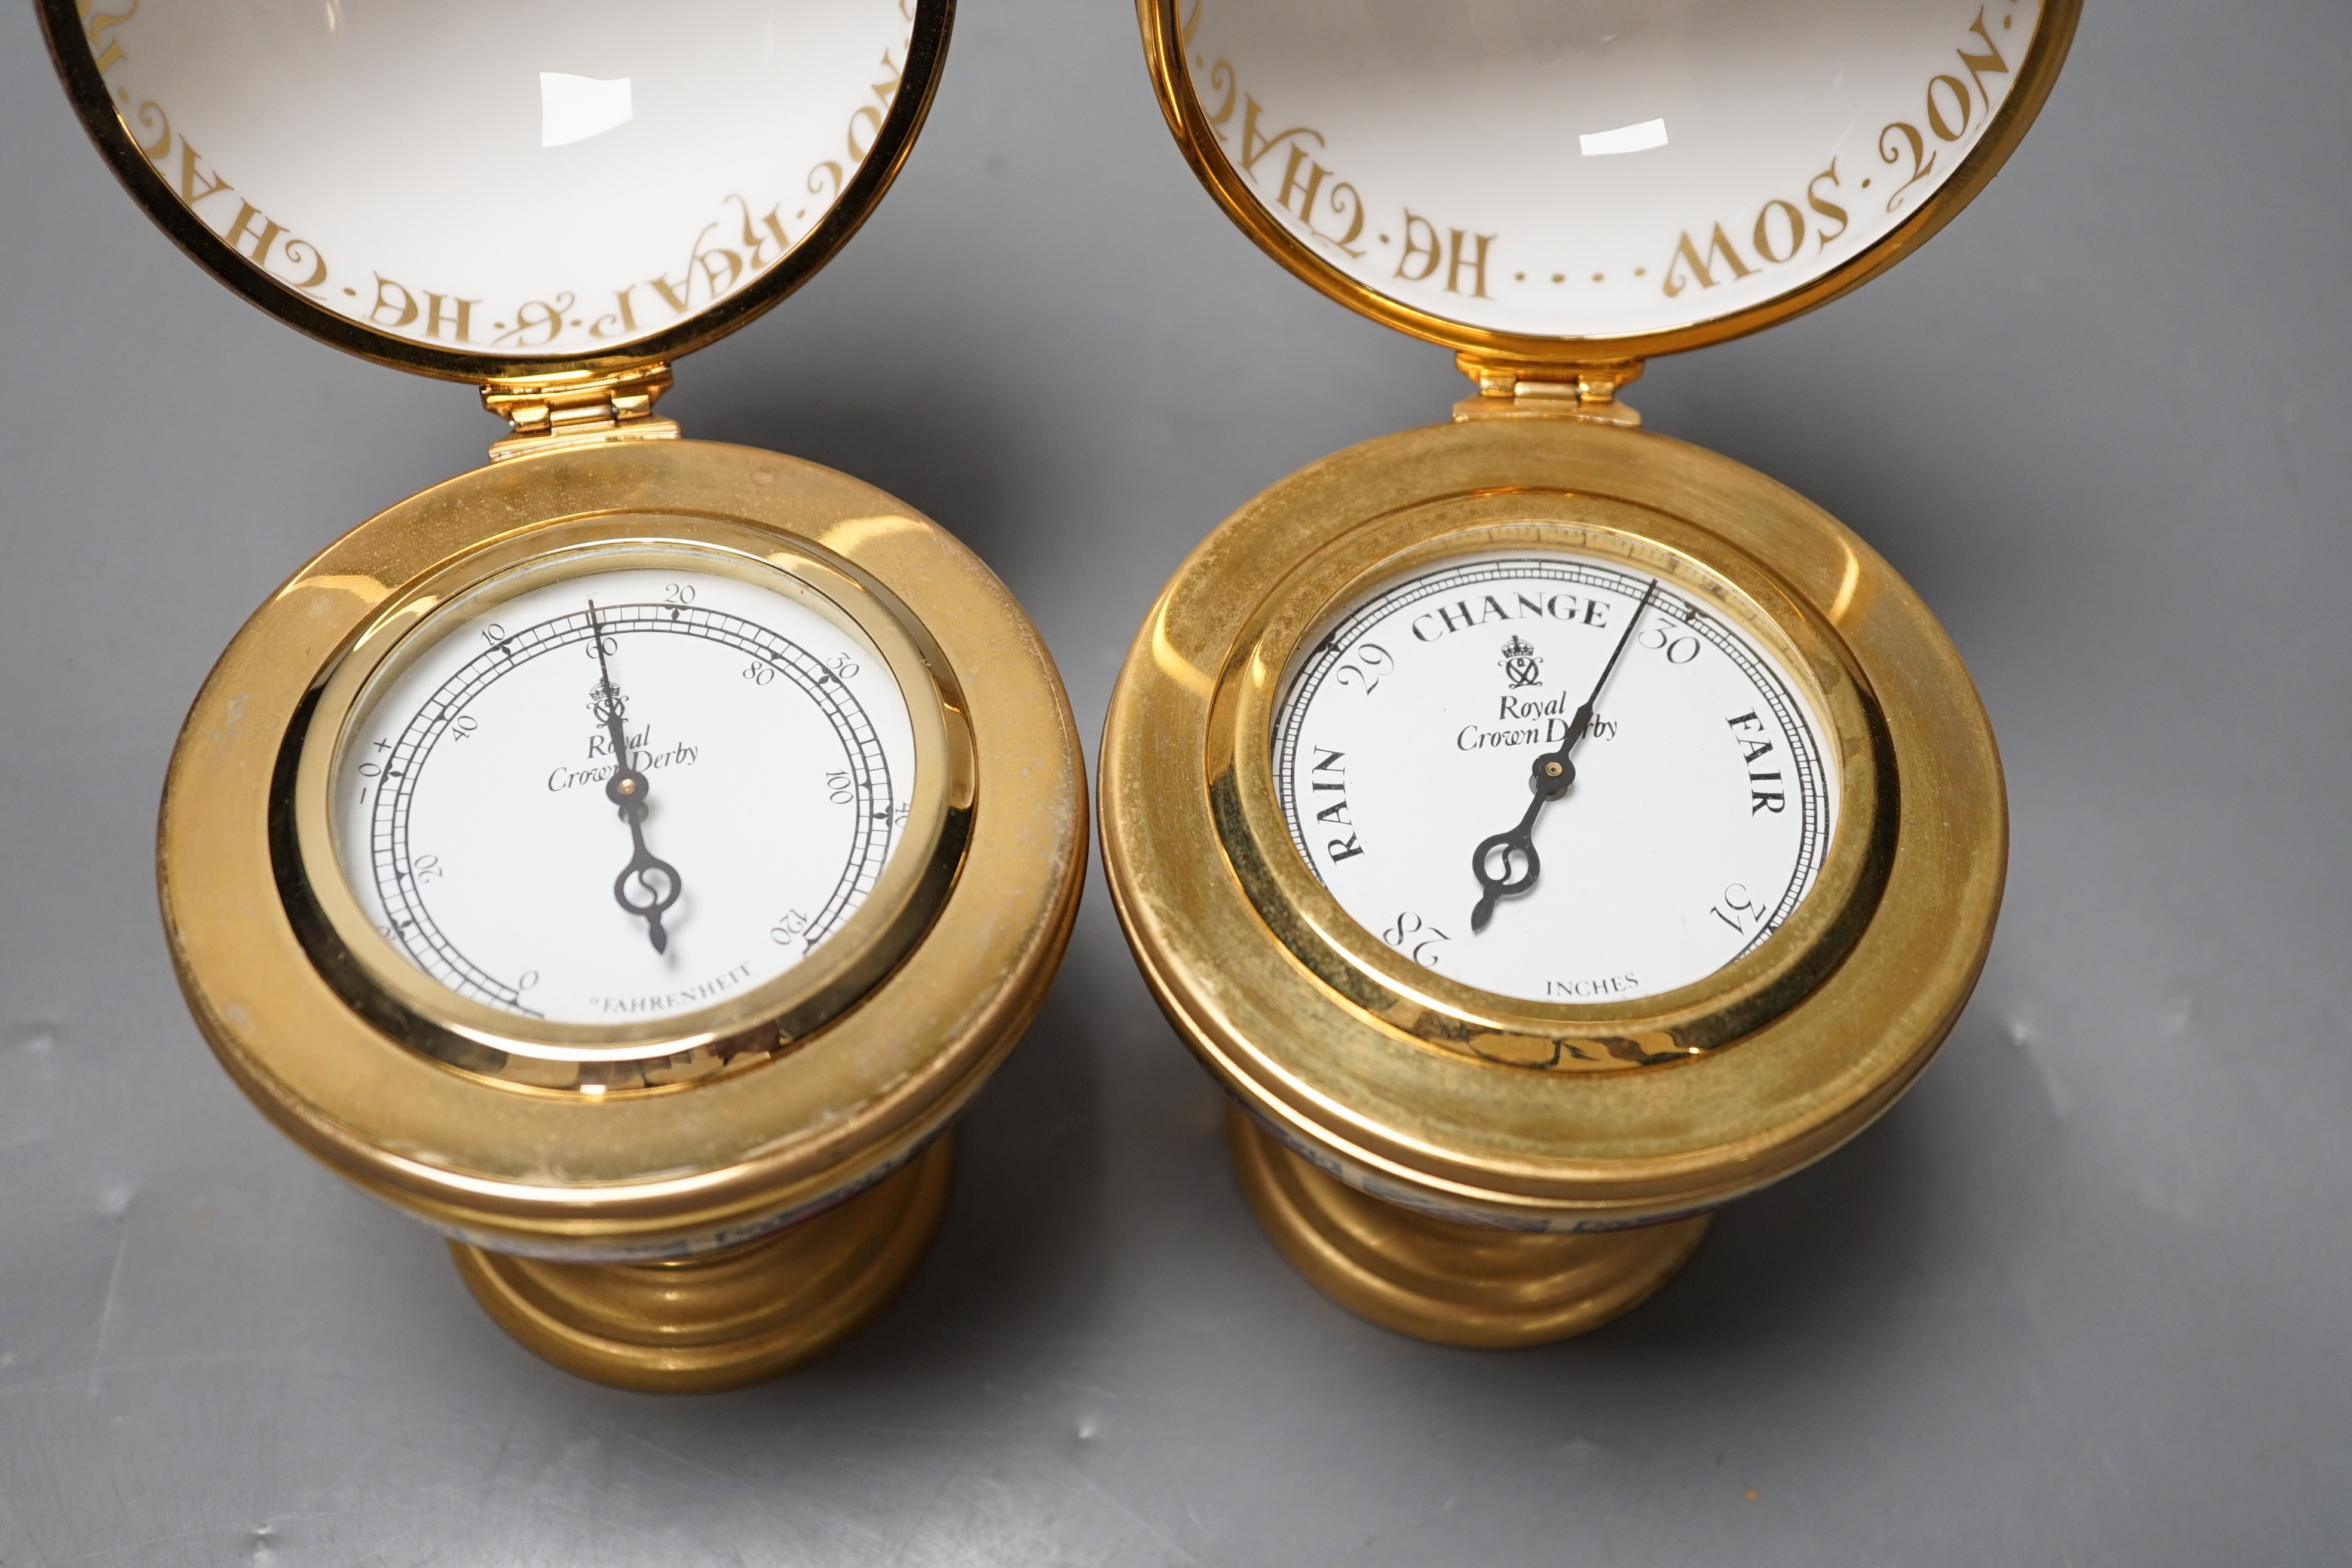 A Royal Crown Derby Millennium globe thermometer and a Millennium globe aneroid barometer, 13cms high